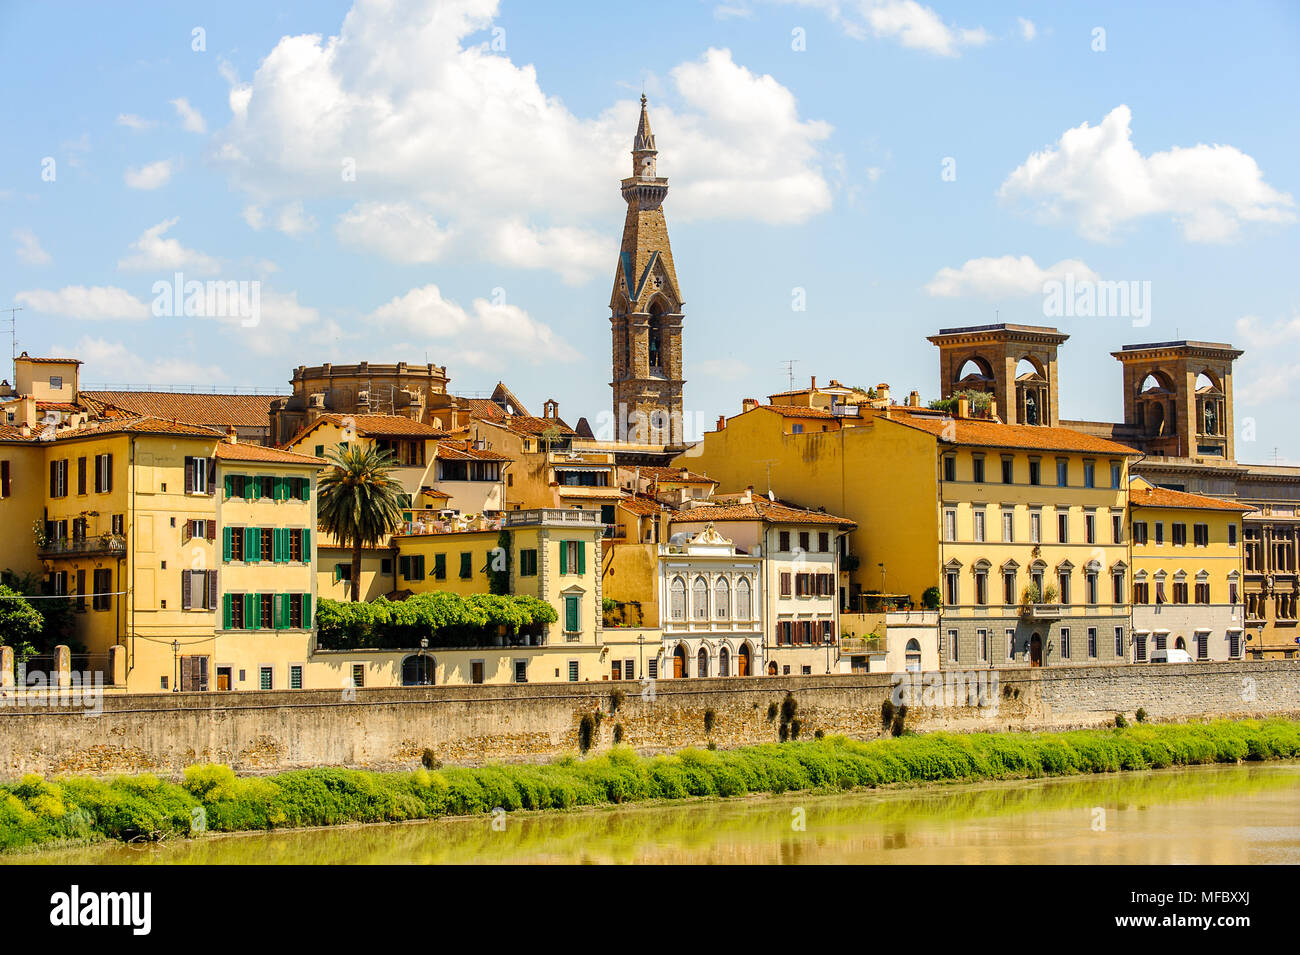 Costa del fiume Arno presso il centro storico di Firenze, Italia. UNESCO World Heriage. Foto Stock